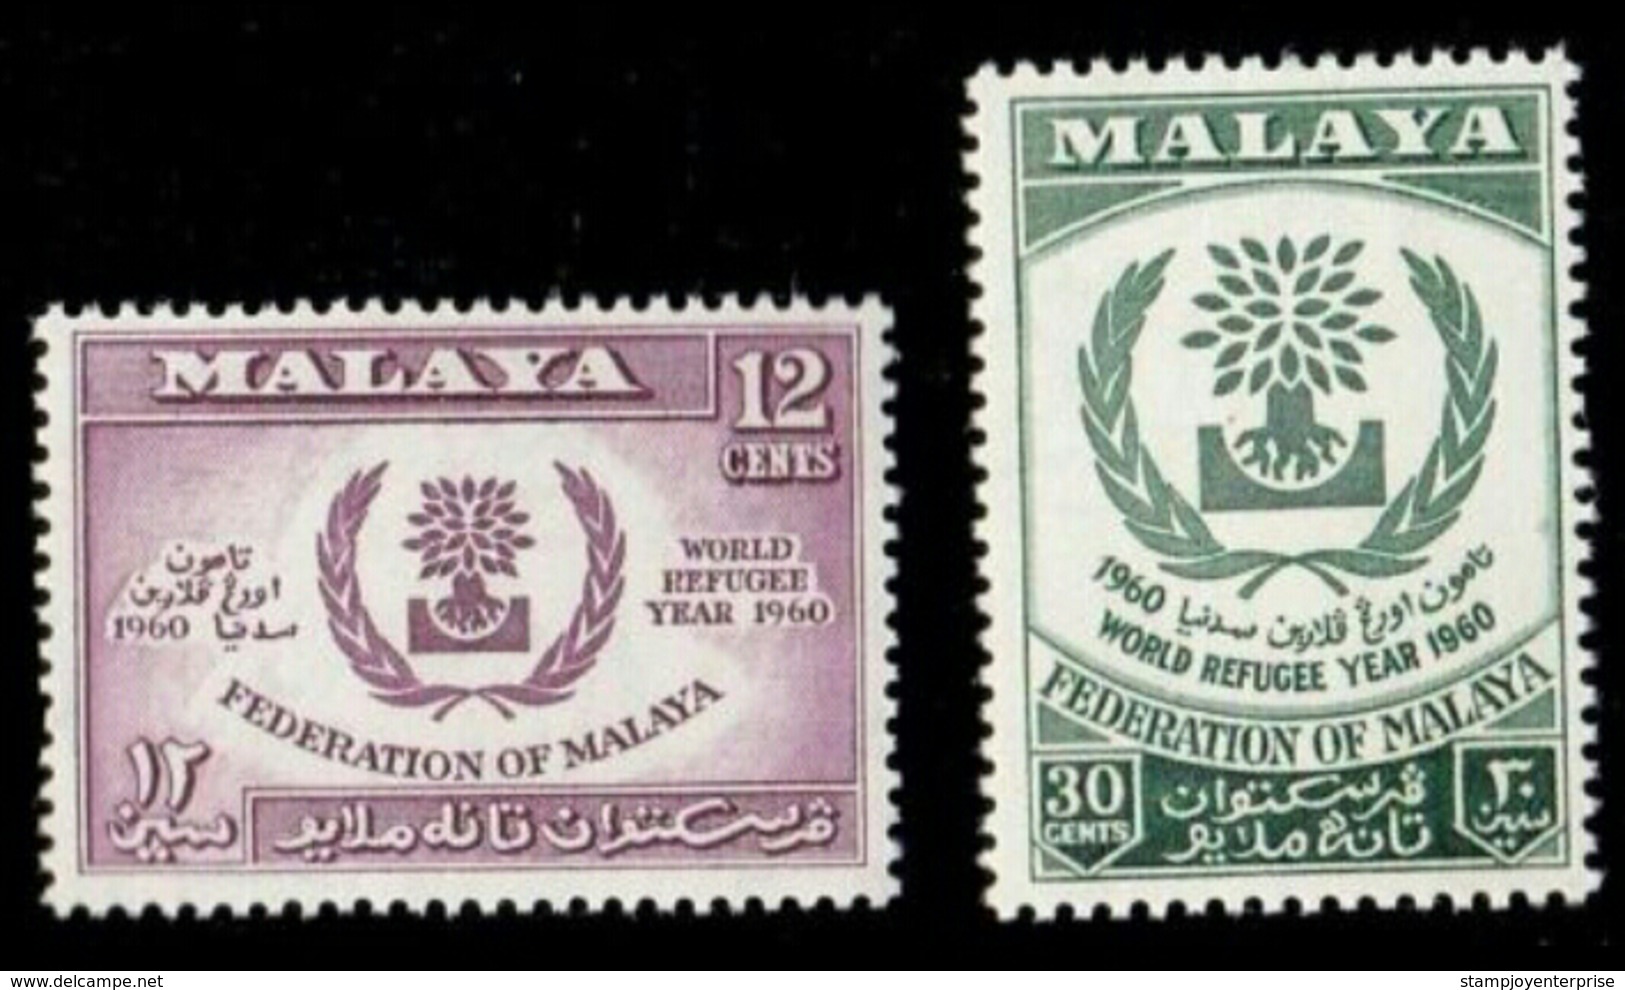 Malaya World Refugee Year 1960 Malaysia (stamp) MNH - Malaysia (1964-...)